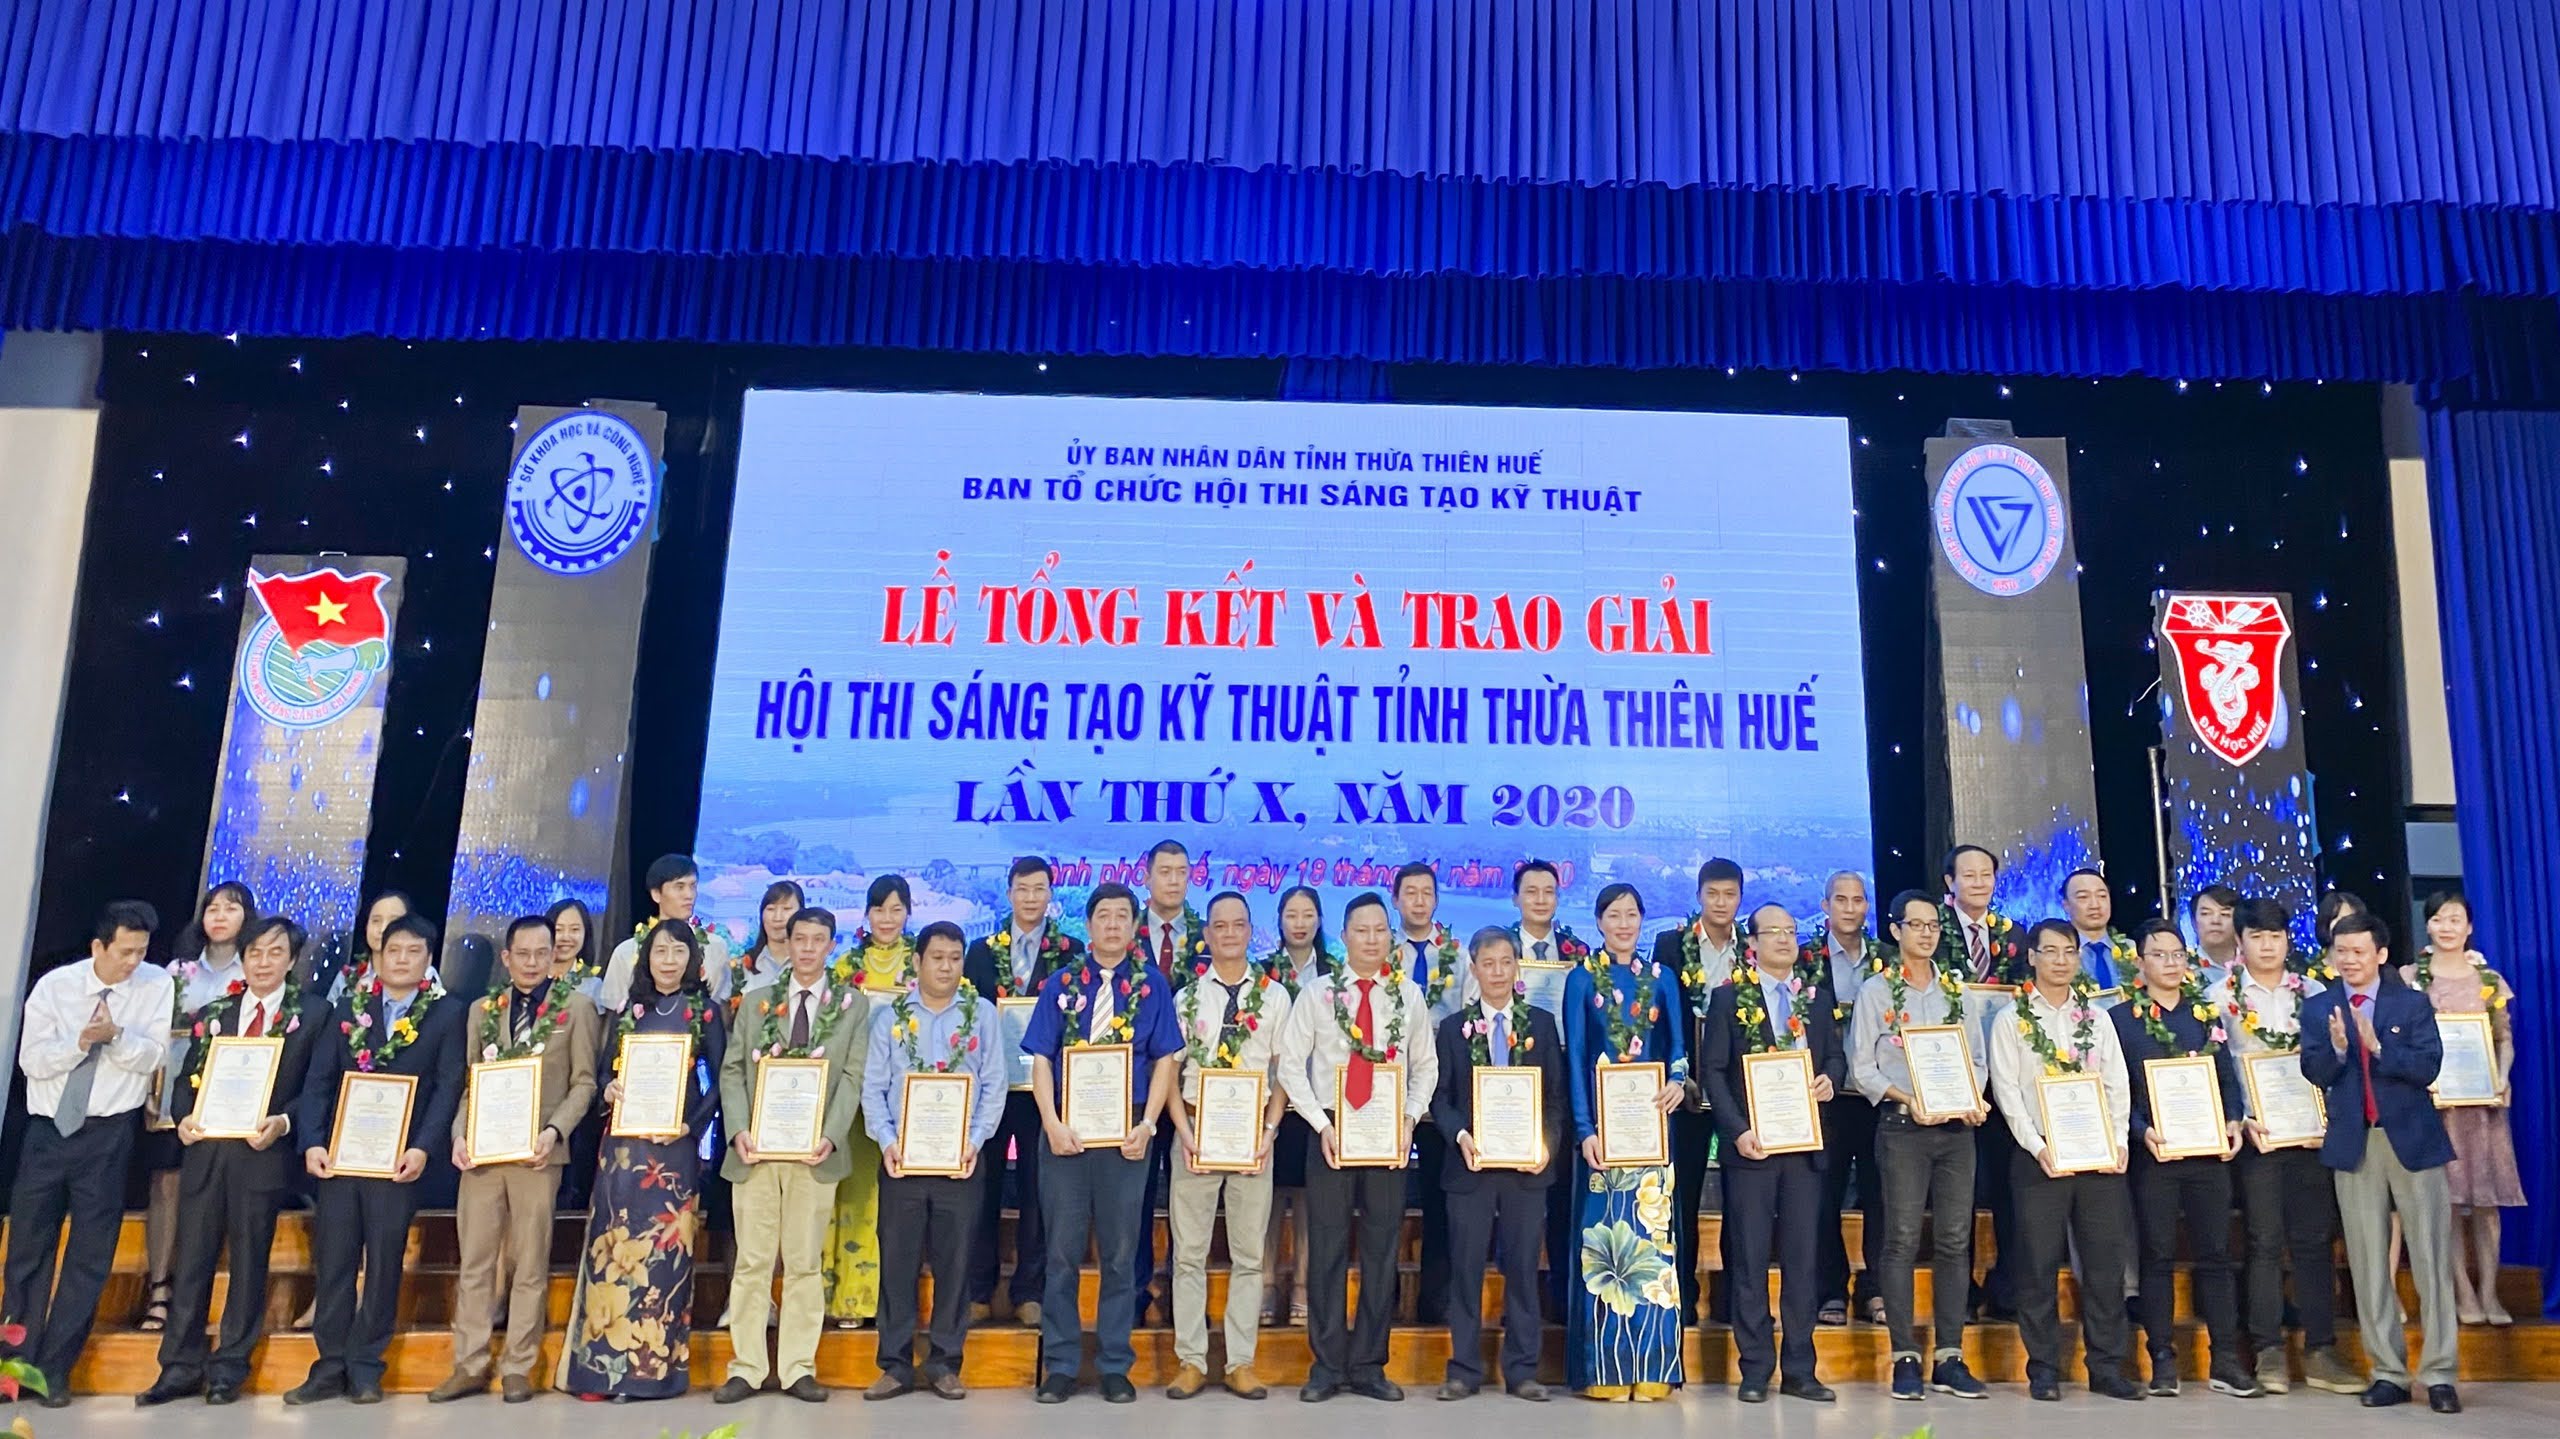 Trường Đại học Y Dược có 7 đề tài đạt giải thưởng tại Hội thi Sáng tạo Kỹ thuật tỉnh Thừa Thiên Huế năm 2020